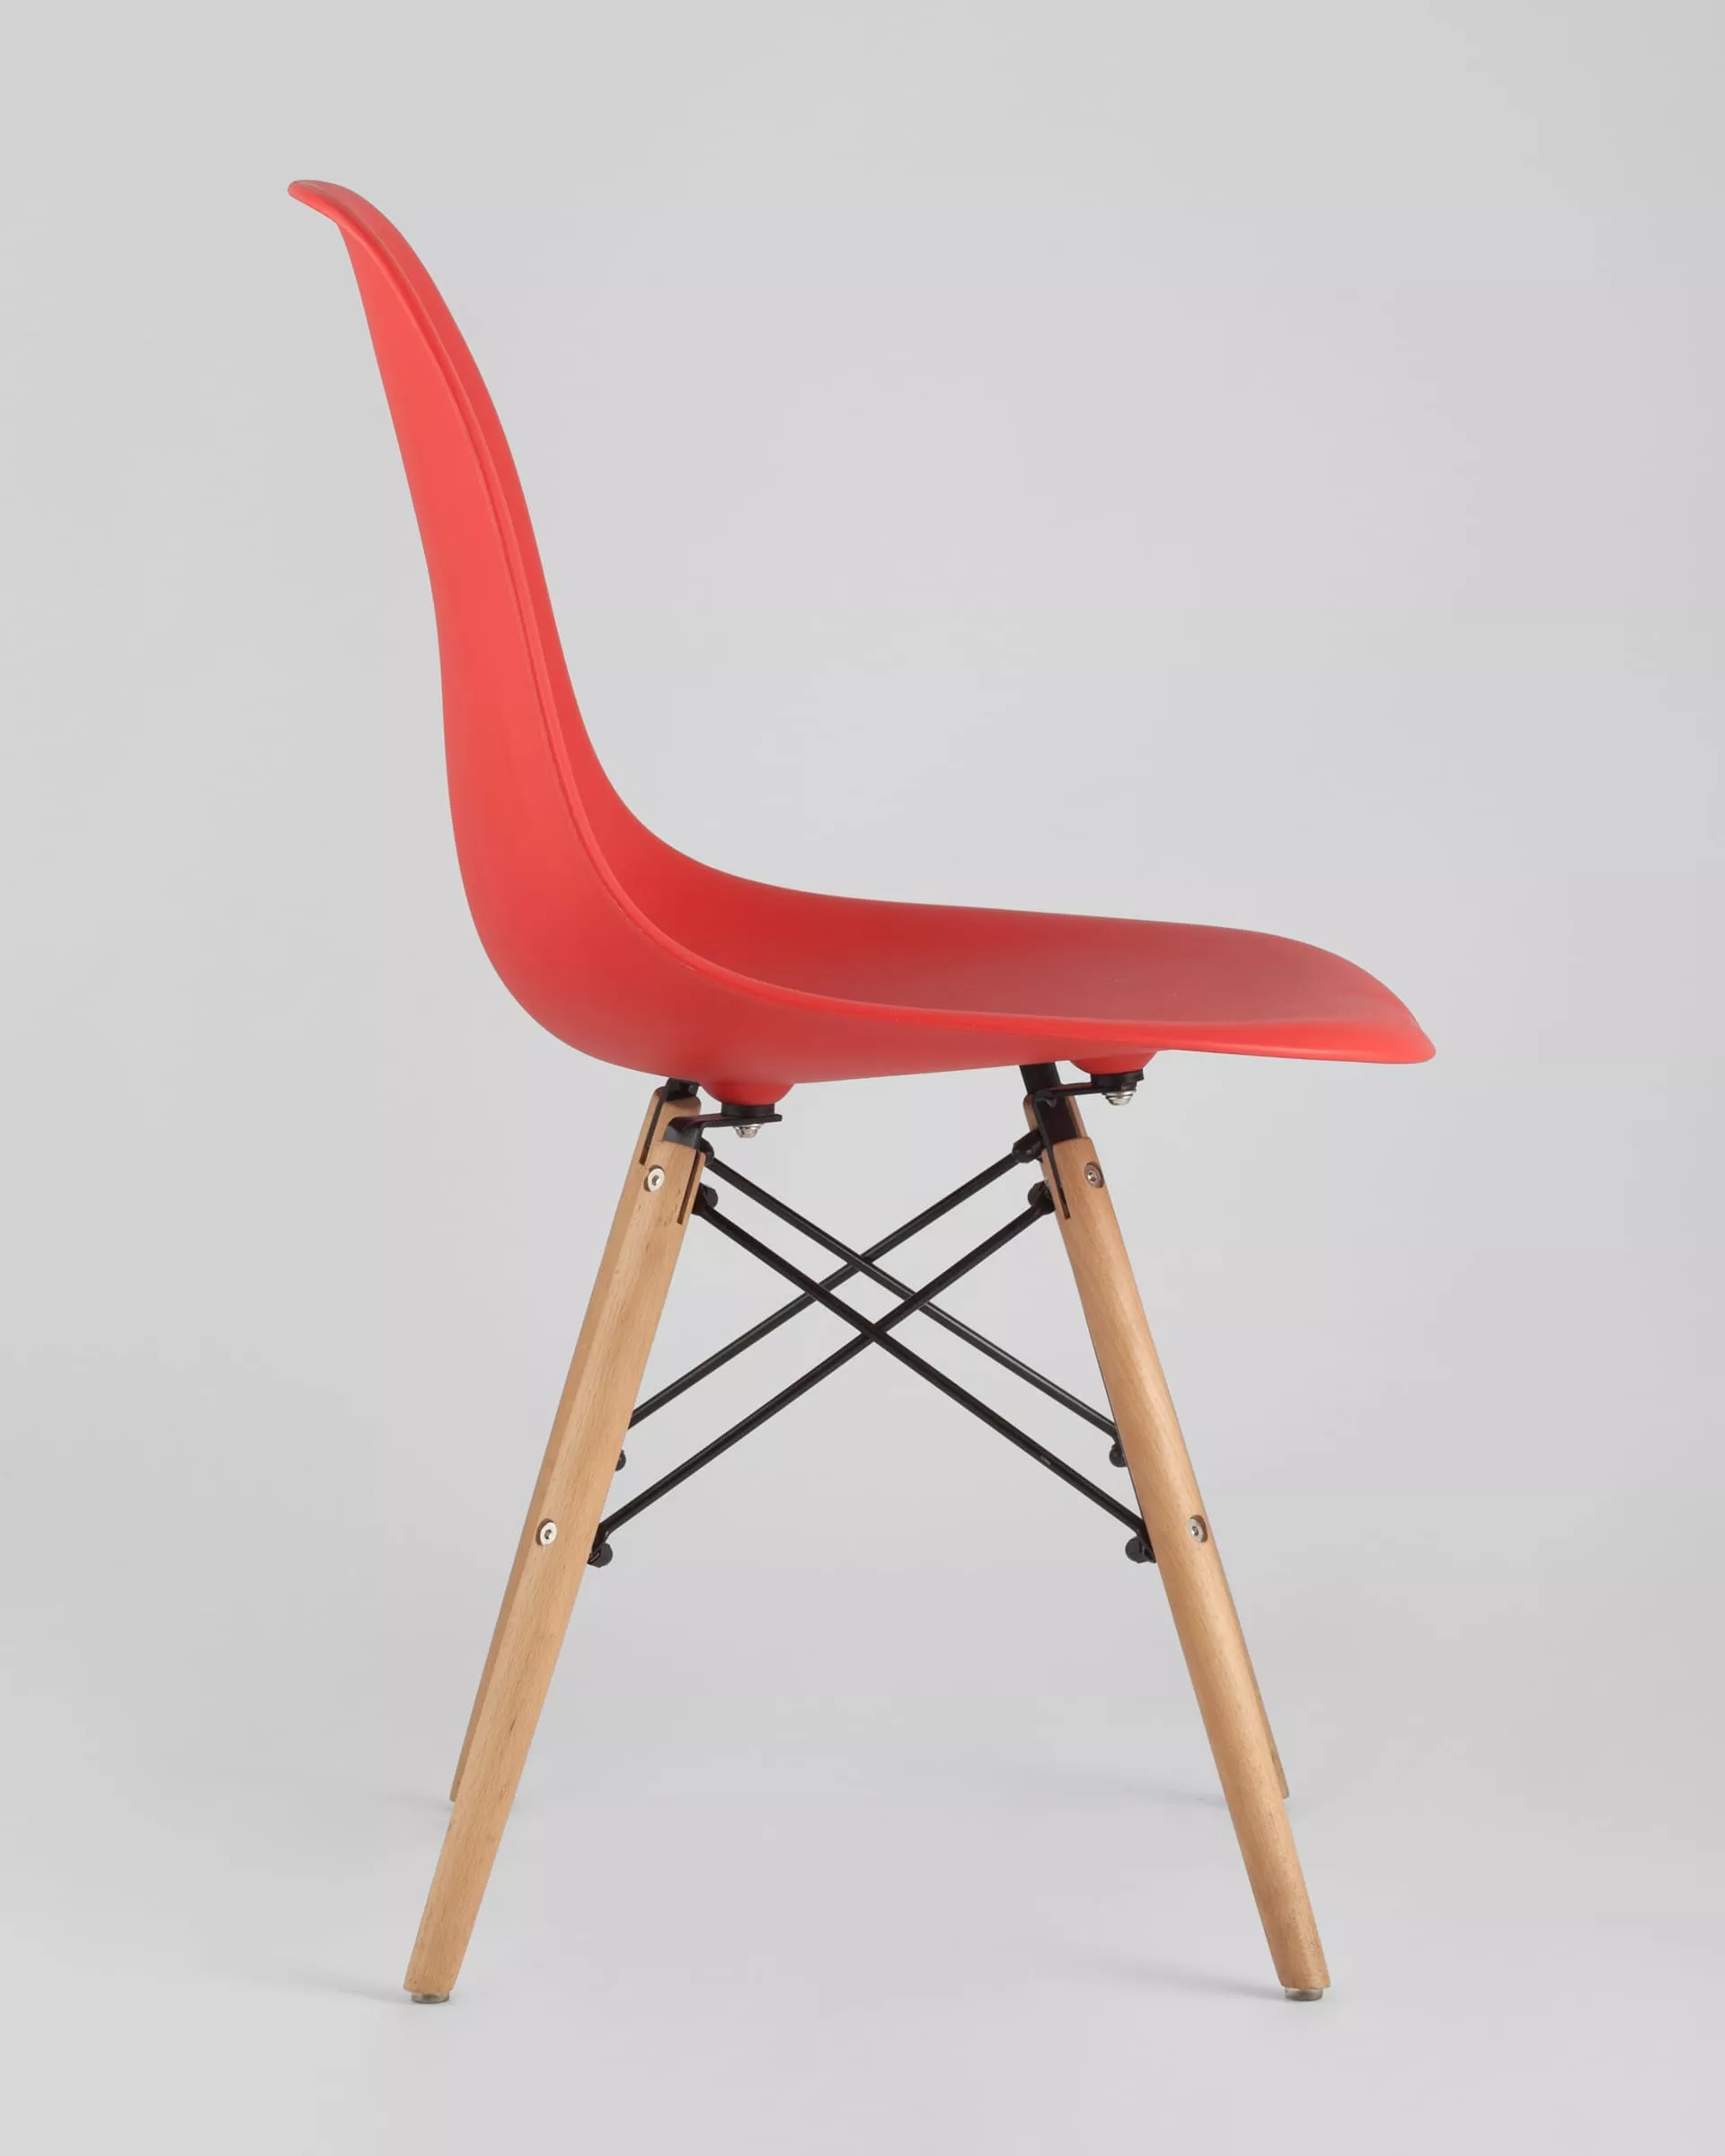 Комплект стульев Eames DSW красный x4 шт